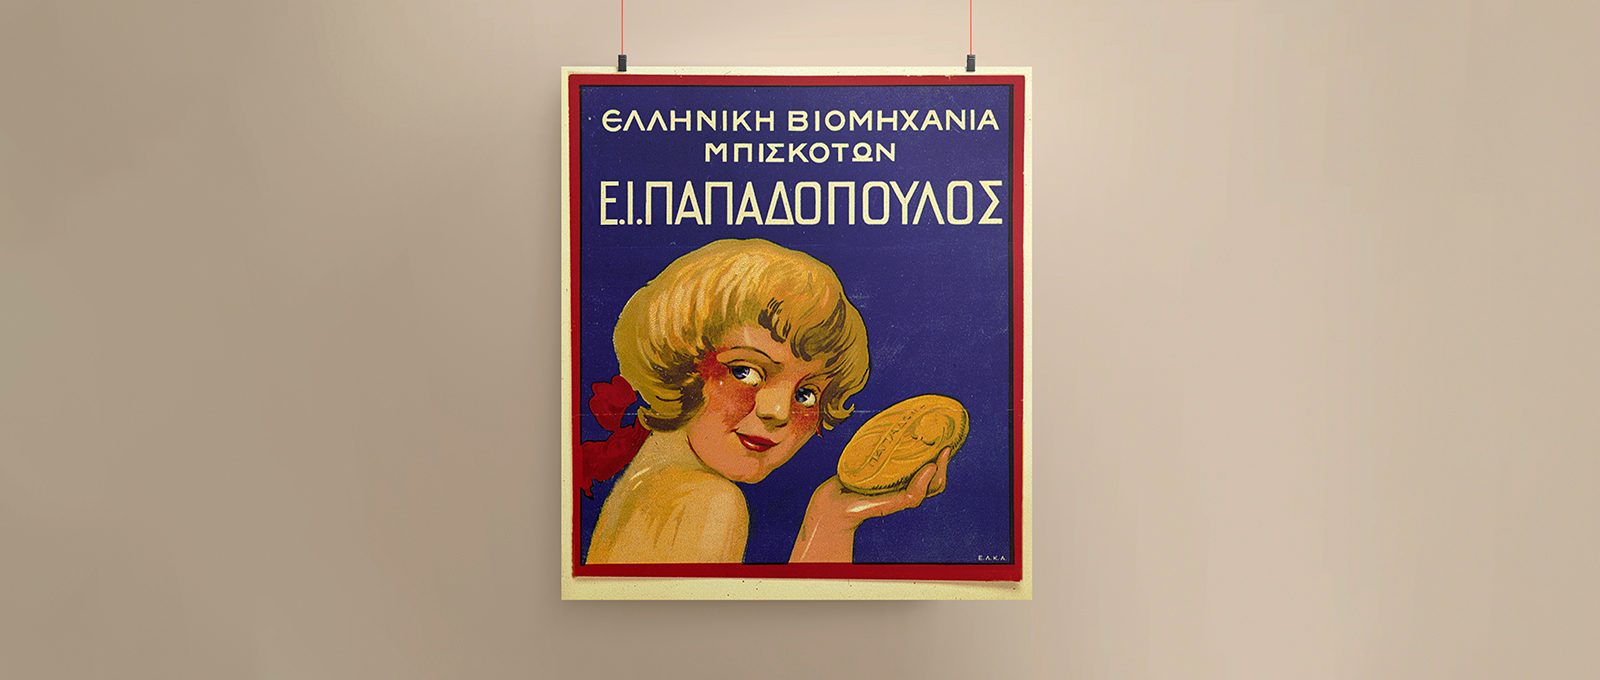 Τέλη δεκαετίας 1920. Διαφημιστική αφίσα εταιρείας